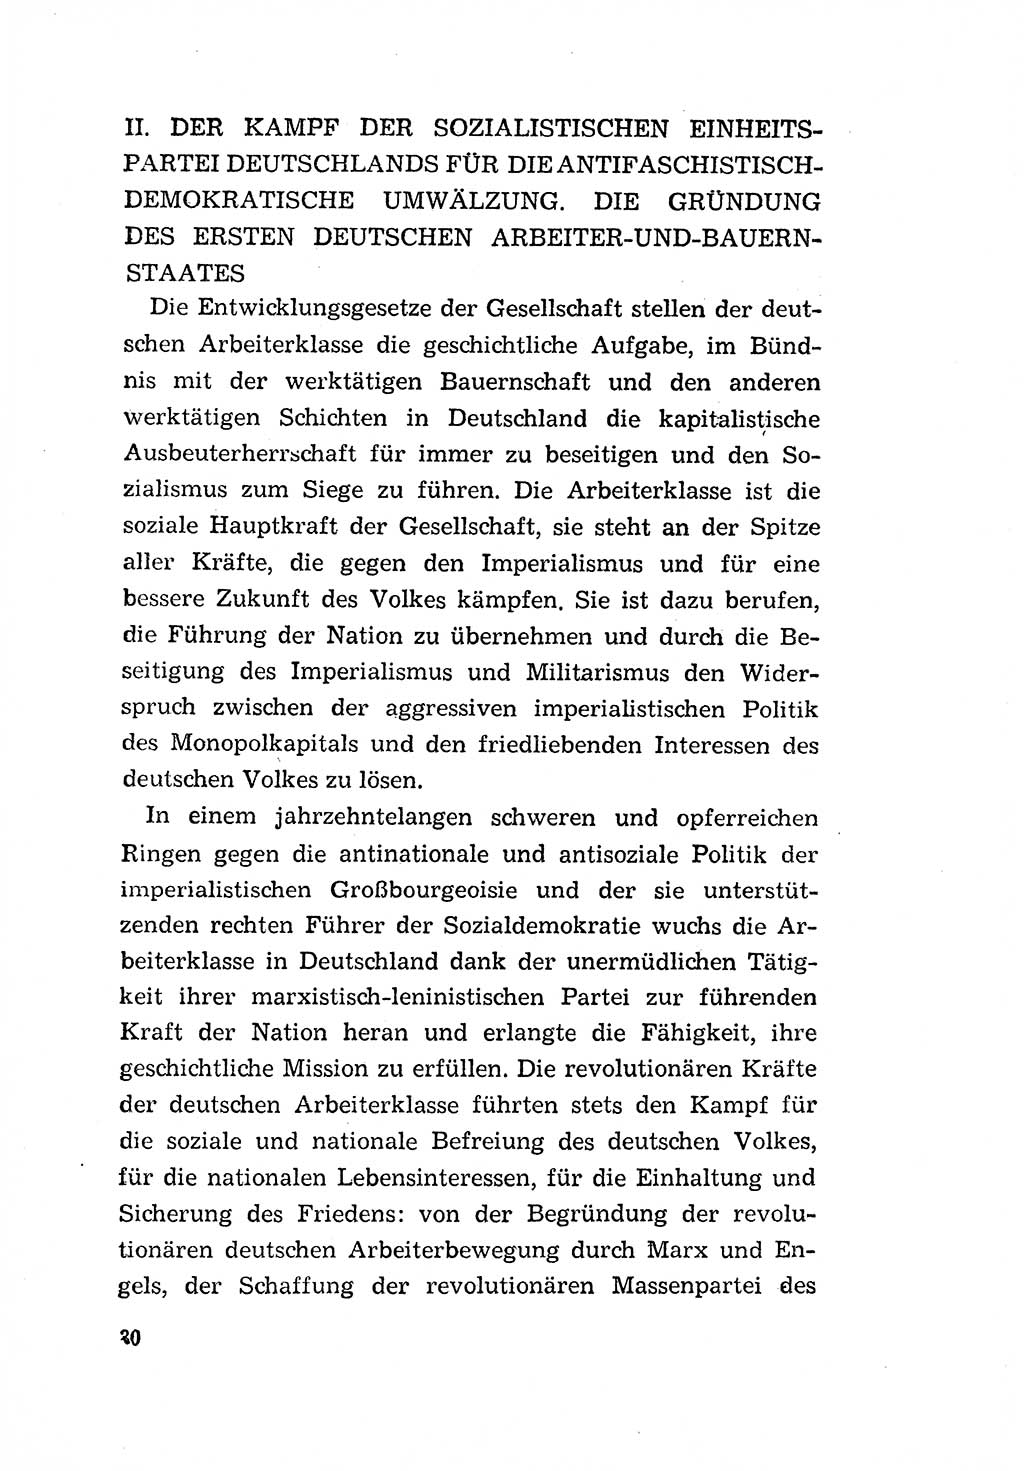 Programm der Sozialistischen Einheitspartei Deutschlands (SED) [Deutsche Demokratische Republik (DDR)] 1963, Seite 30 (Progr. SED DDR 1963, S. 30)